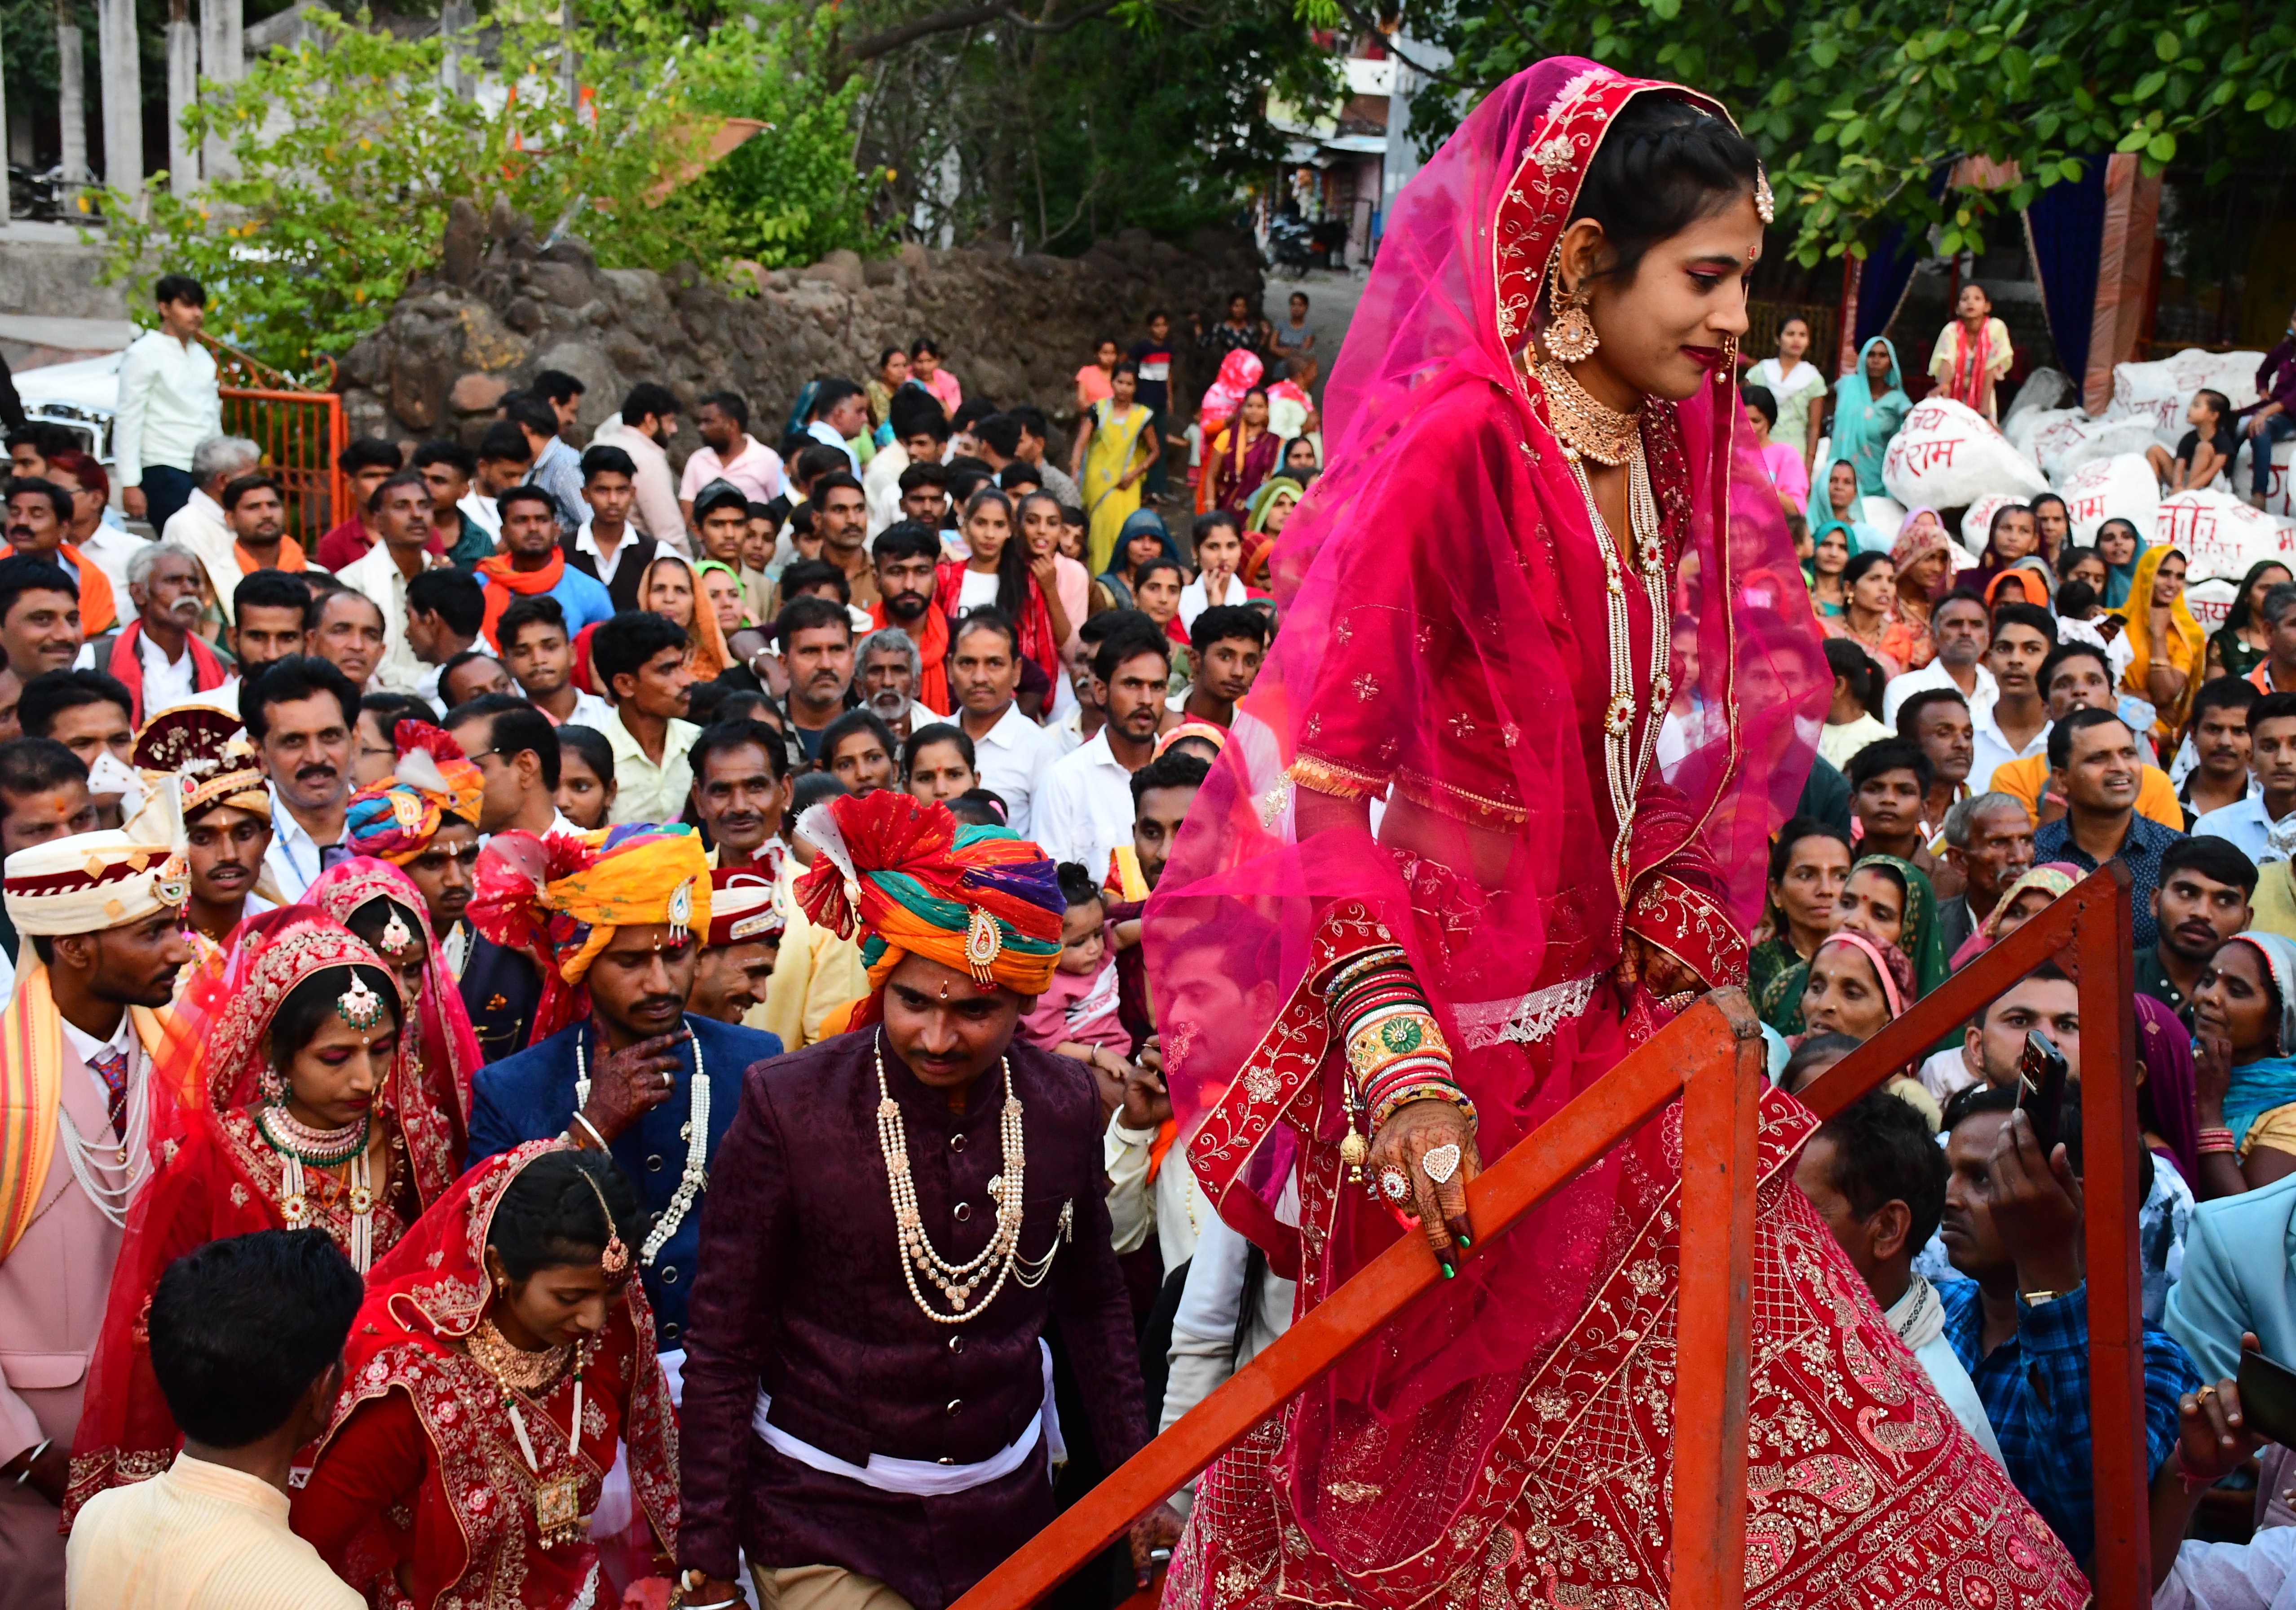 अक्षय तृतीया पर अखिल भारतीय पाल समाज का आदर्श सामूहिक विवाह सम्मेलन में 18 जोड़ो
की शादी